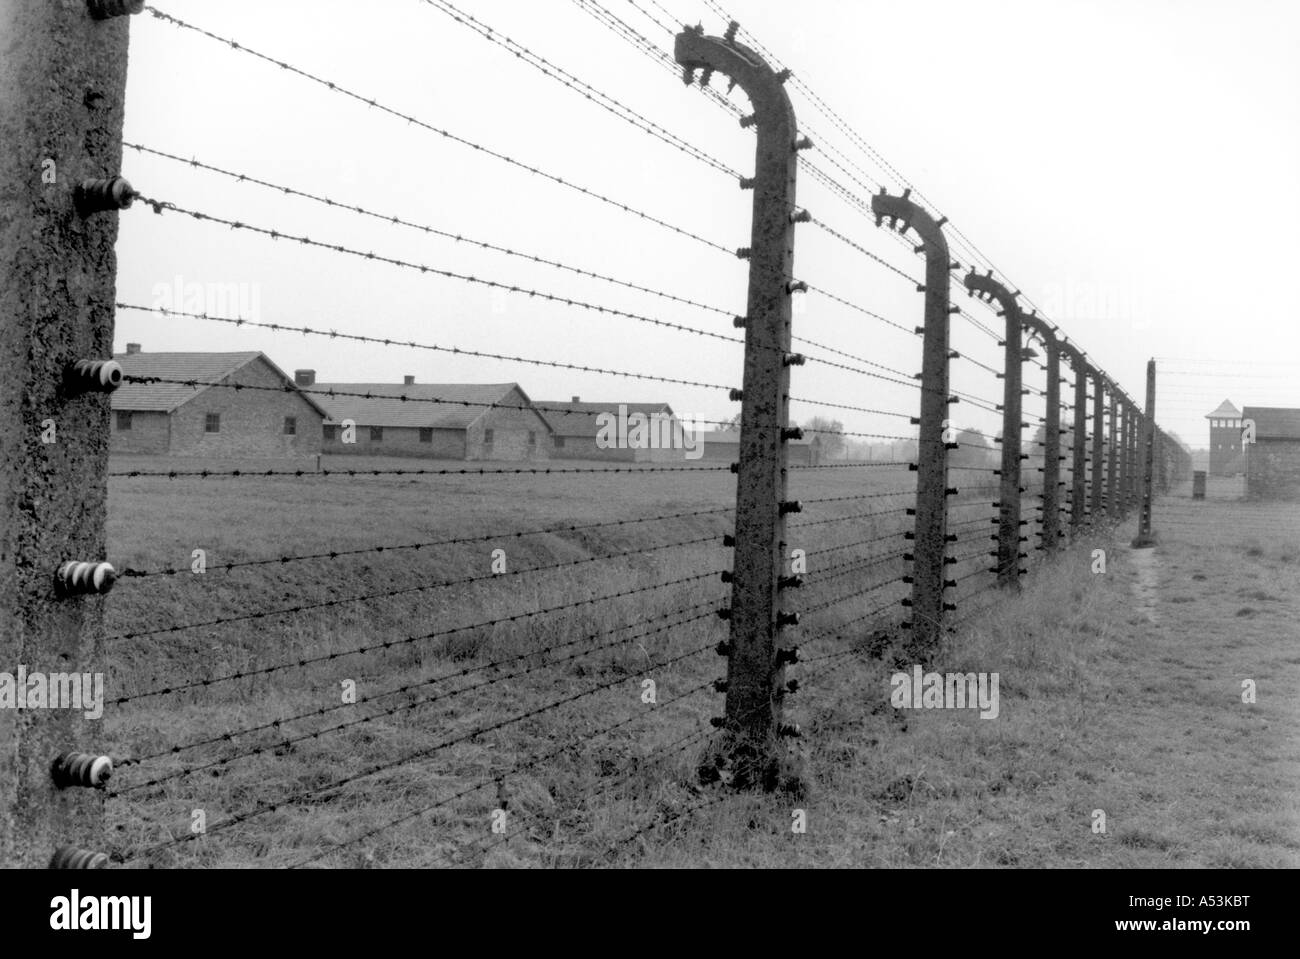 Painet ha1242 018 in bianco e nero la guerra recinzioni campo di concentramento di Auschwitz Polonia paese nazione in via di sviluppo meno economicamente Foto Stock